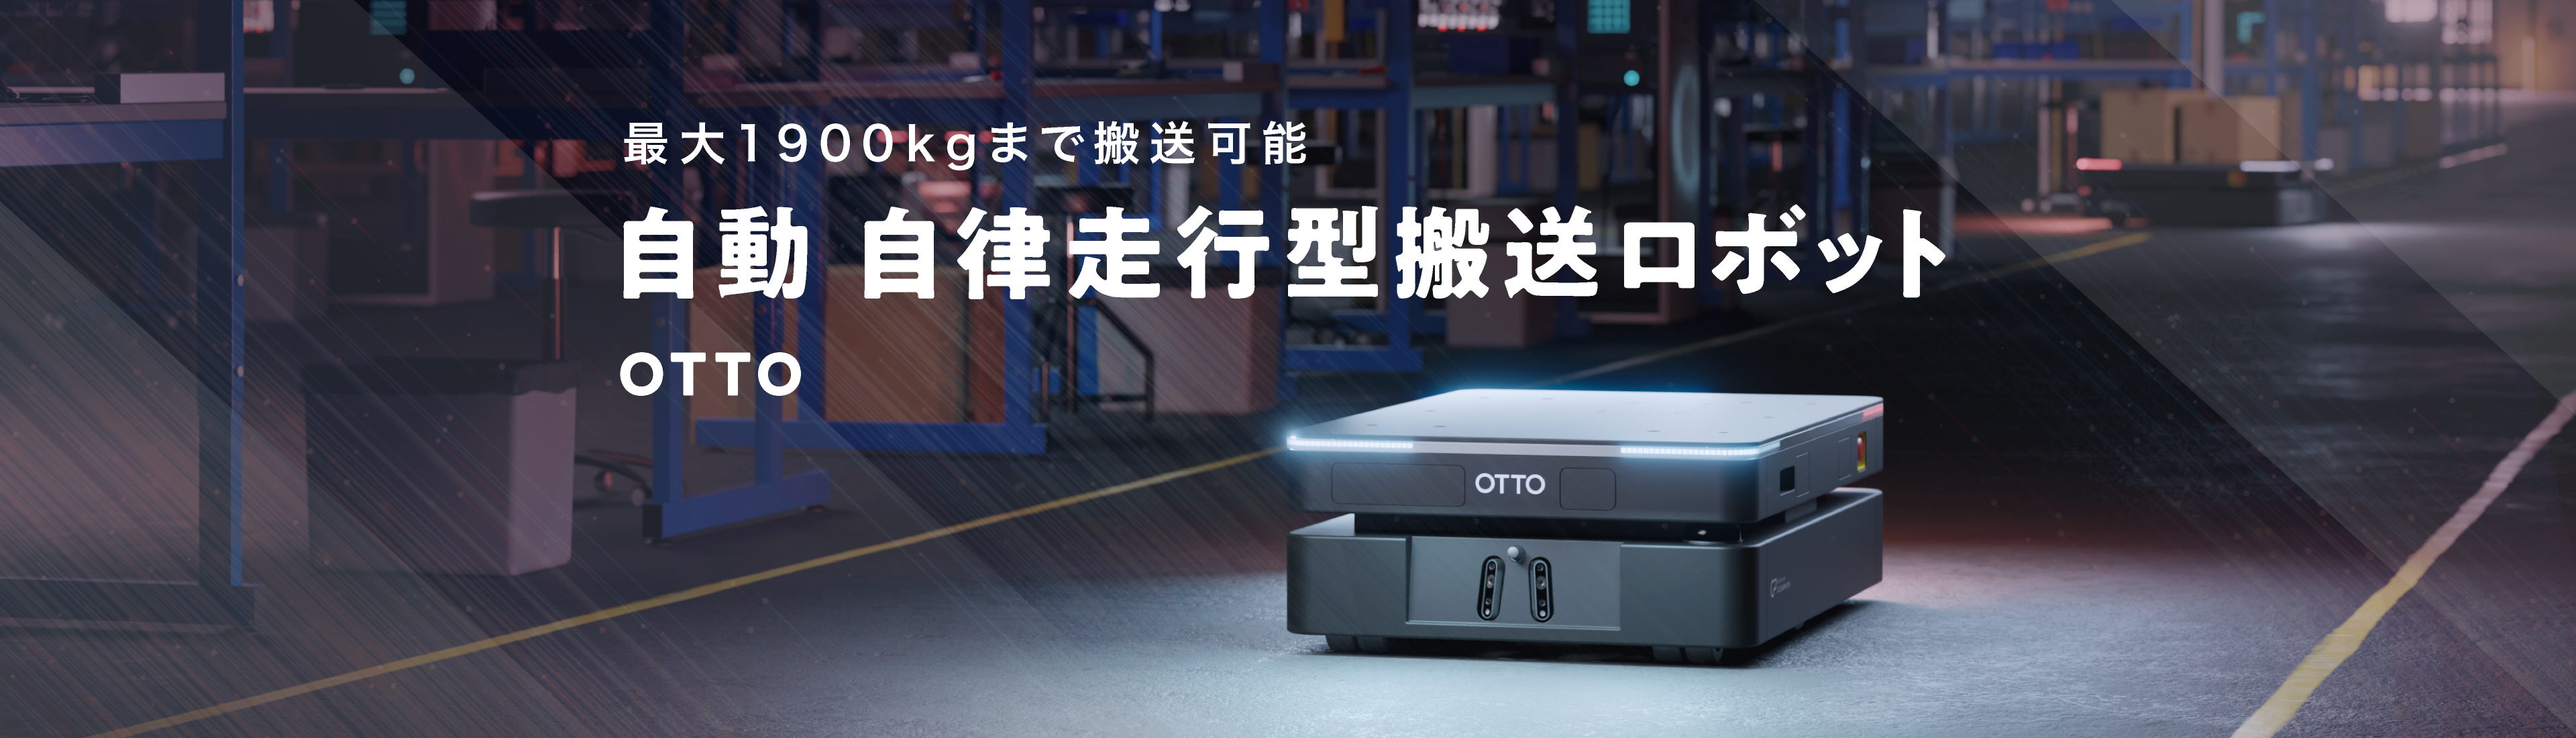 最大1900kgまで搬送可能 自動 自律走行型搬送ロボット OTTO